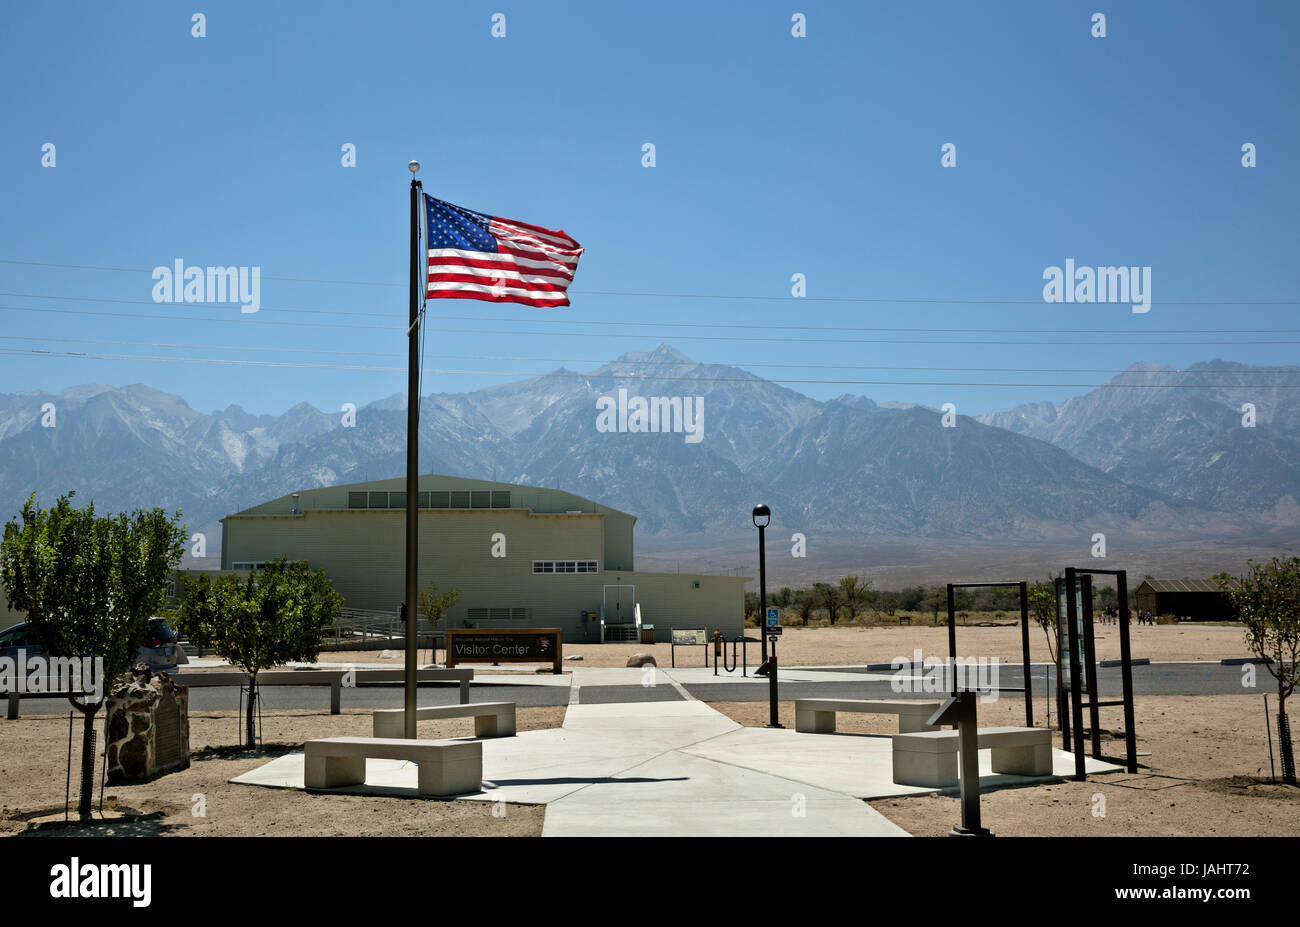 Ca03264-00...Californie - chaud, sec et venteux jour à la guerre mondiale 2 camp d'internement japonais de manzanar, un lieu historique national en owens valley. Banque D'Images